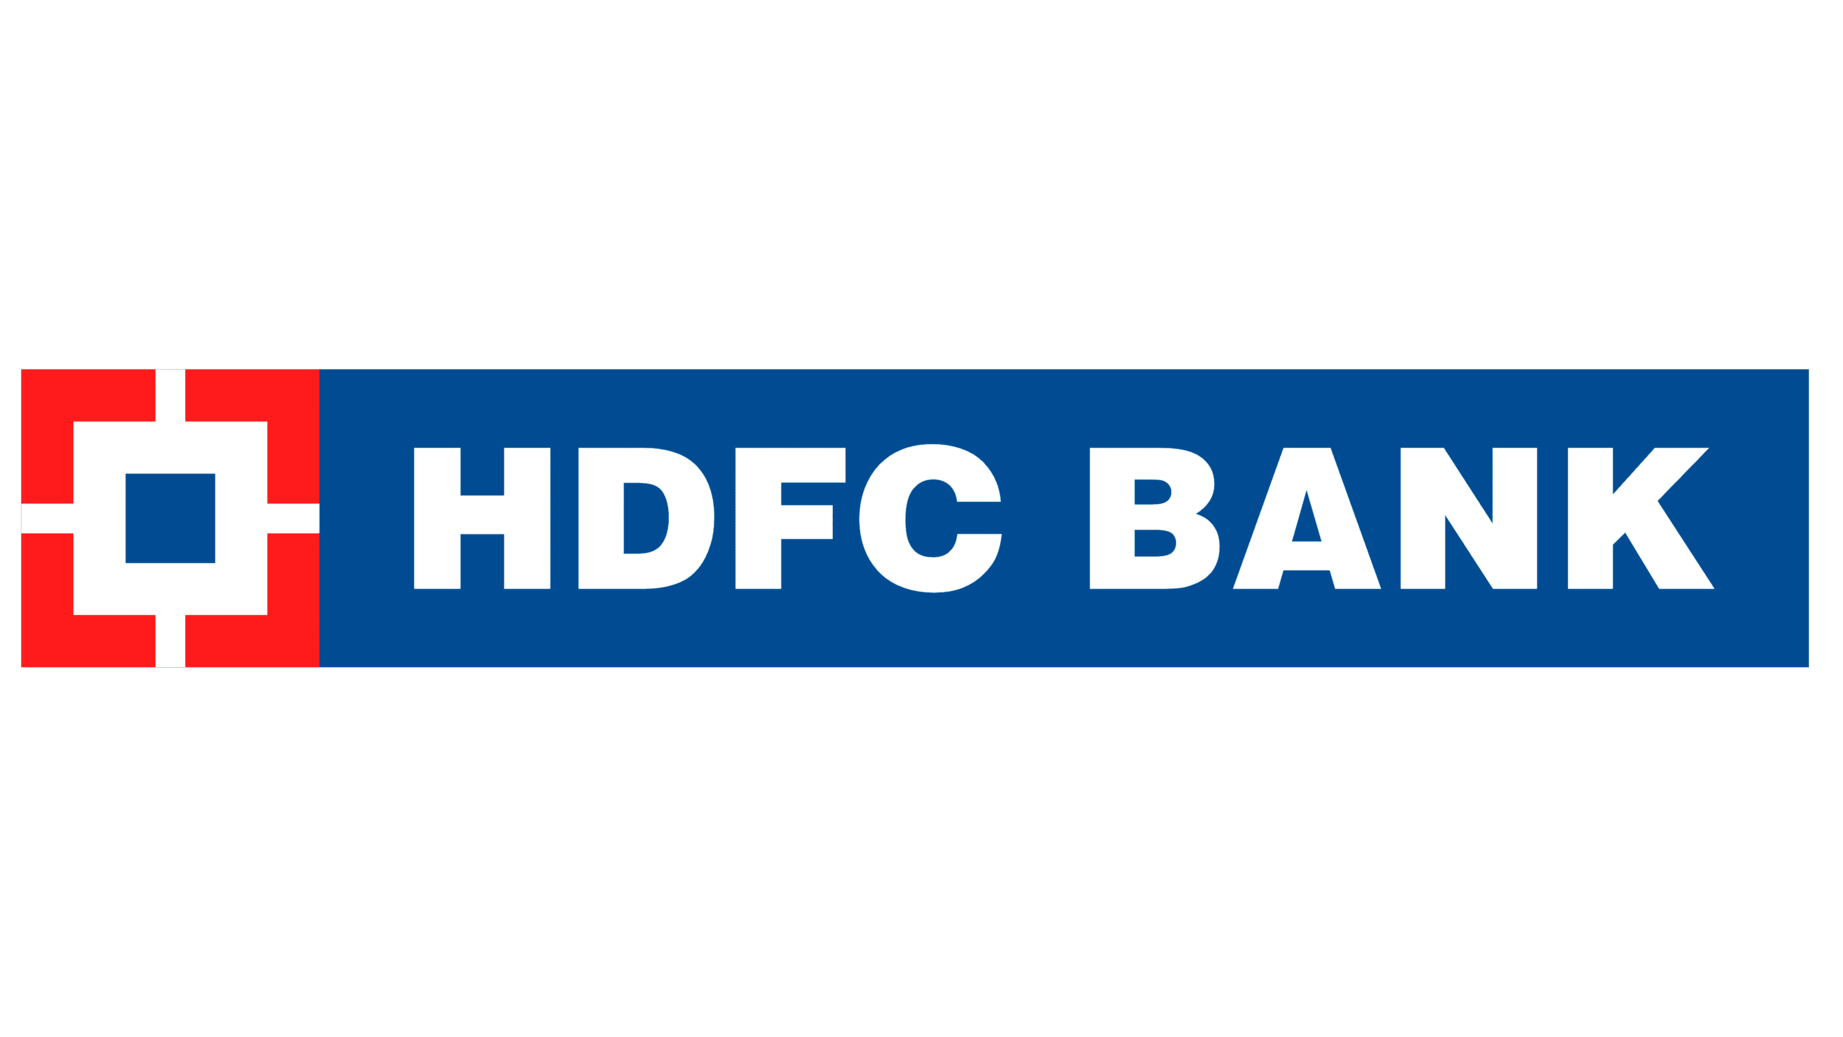 Hdfc bank symbol